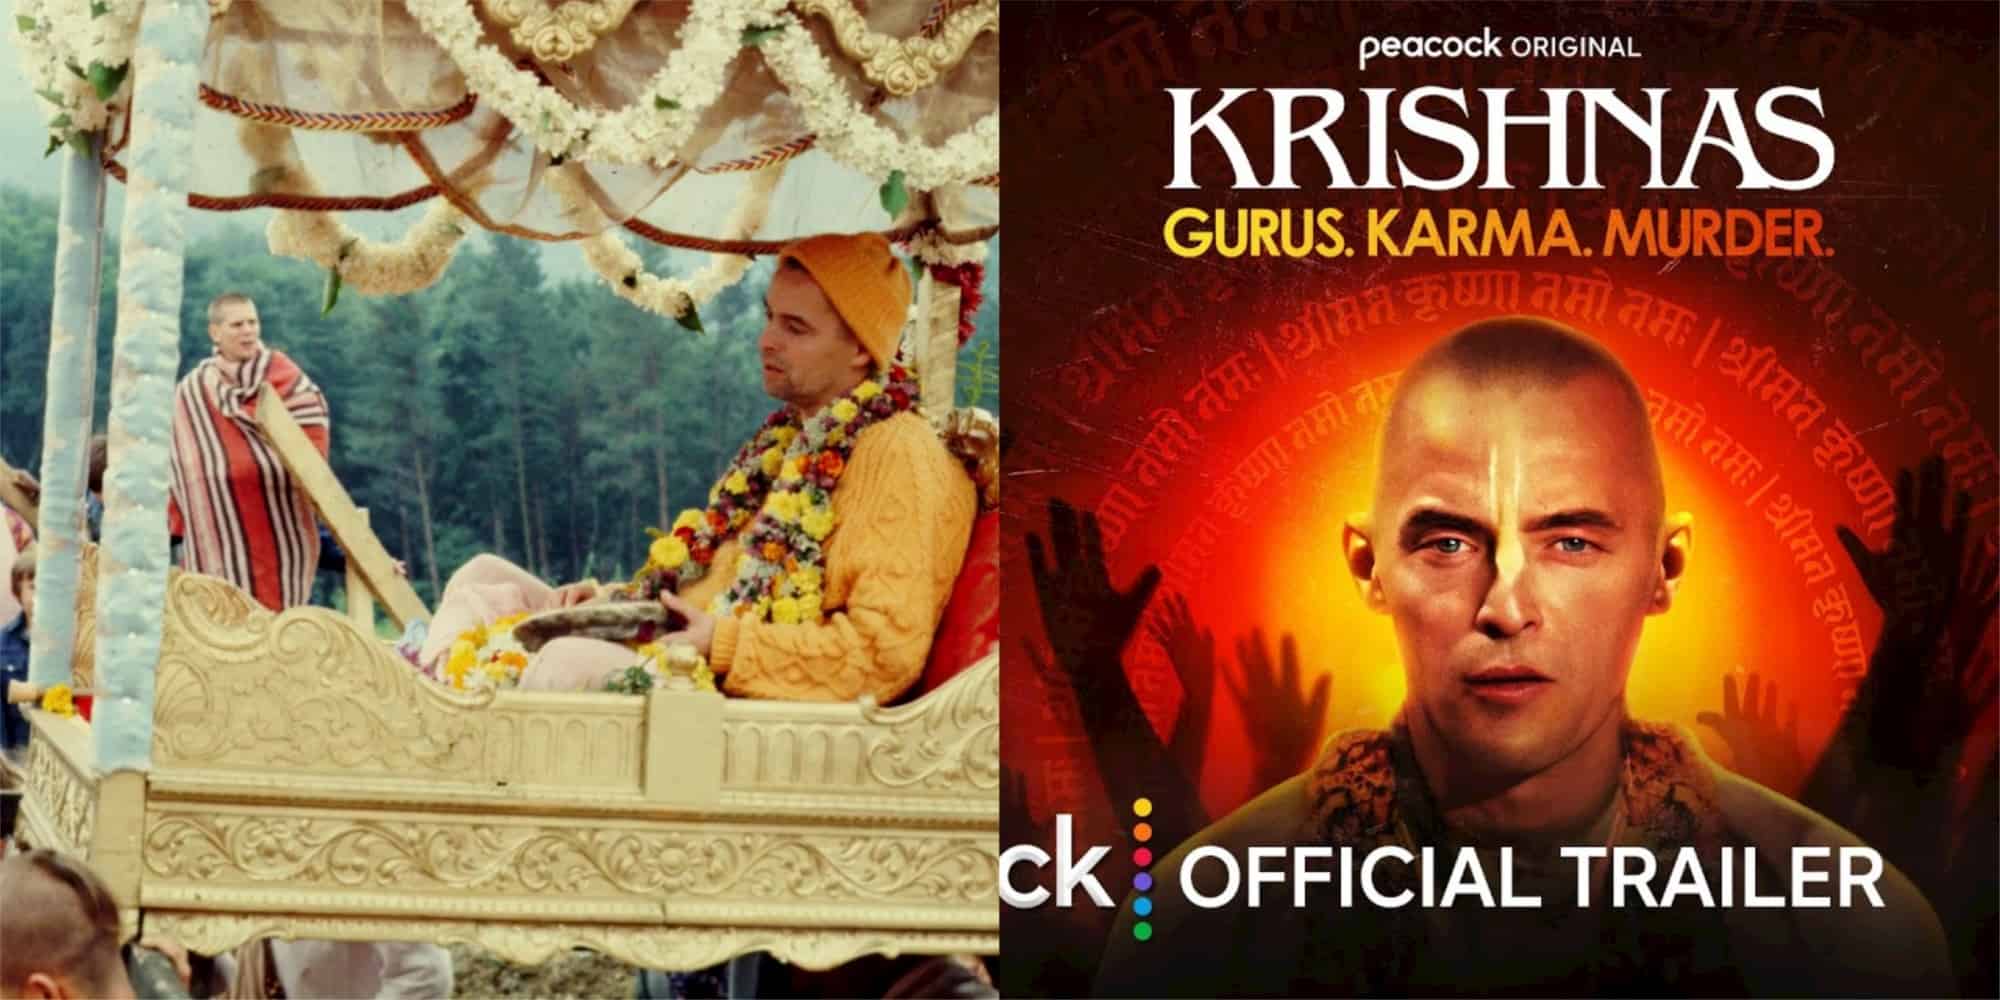 Krishnas Gurus. Karma. Murder. episode 1